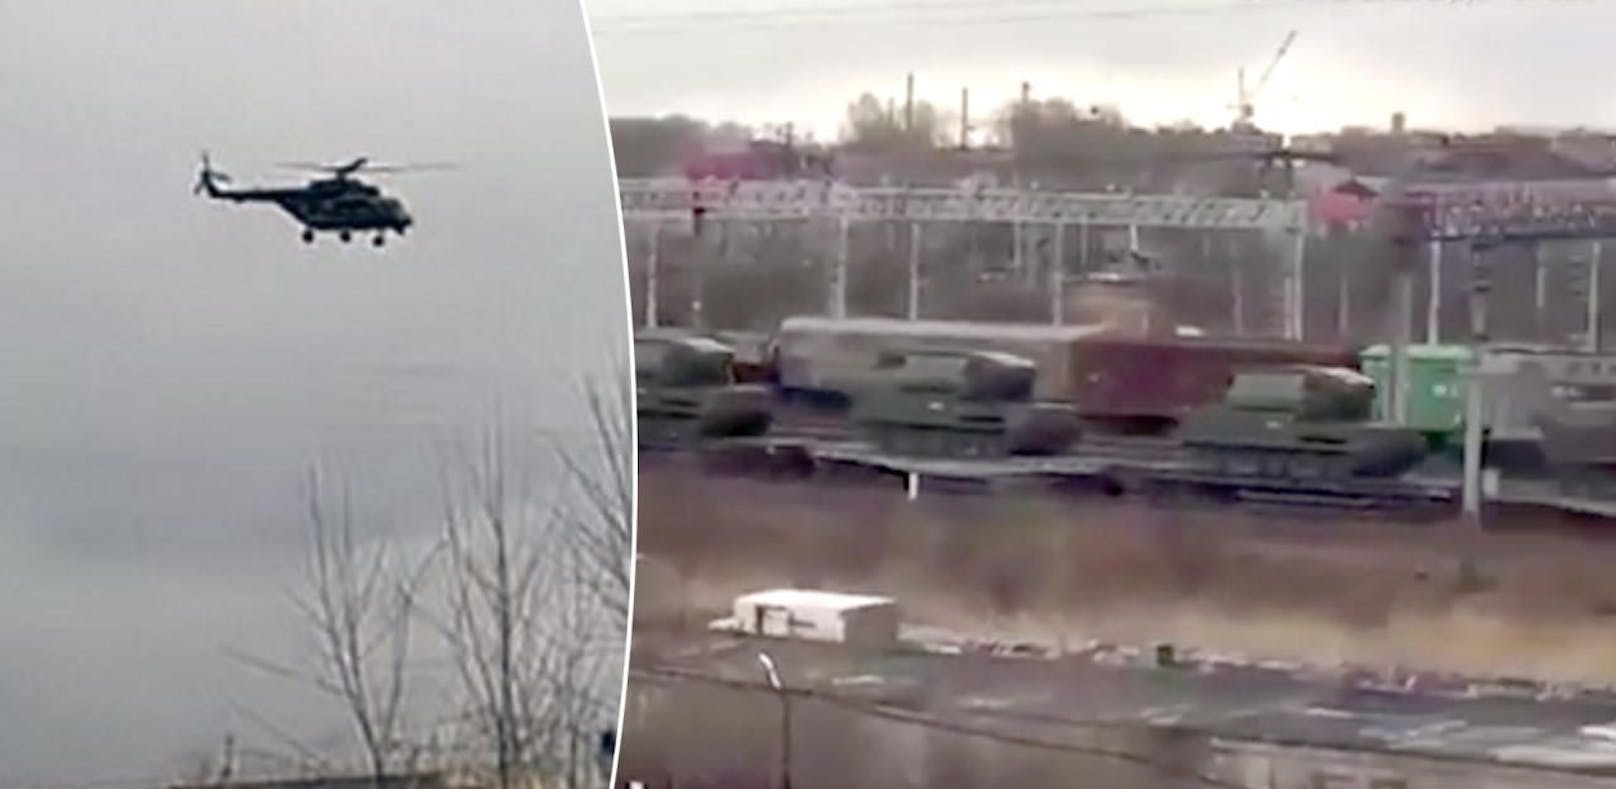 Russland verlegt Truppen an Grenze zu Nordkorea